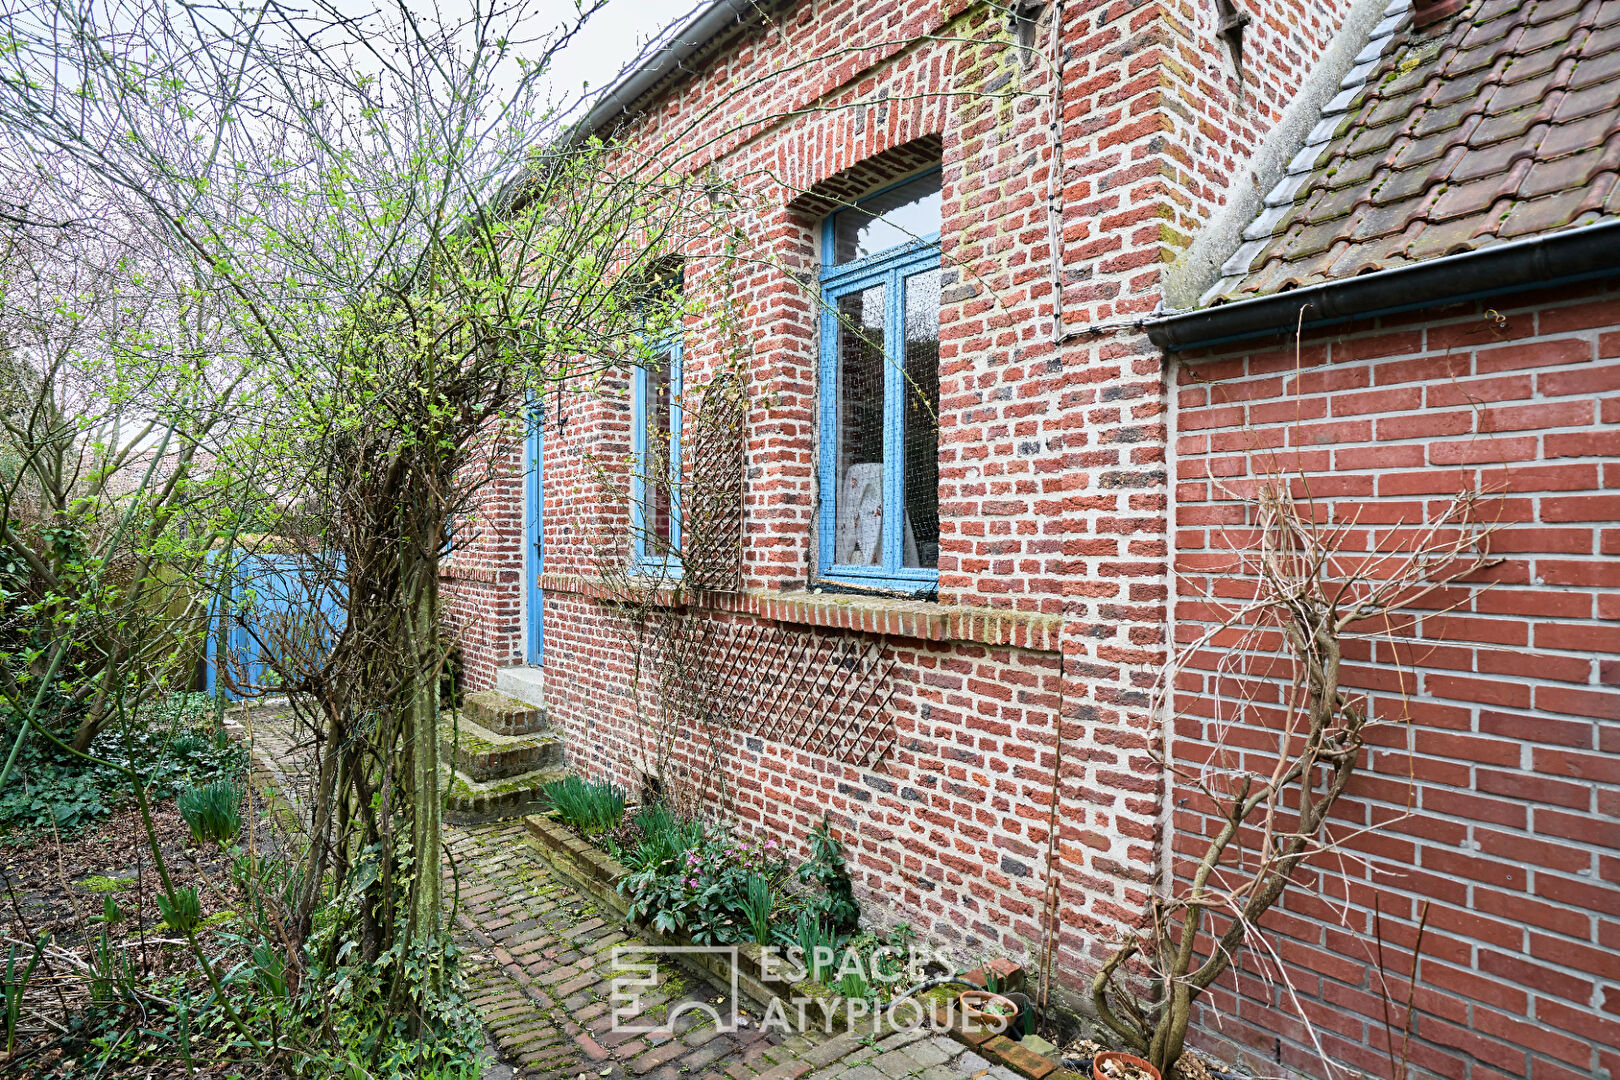 armhouse near Douai